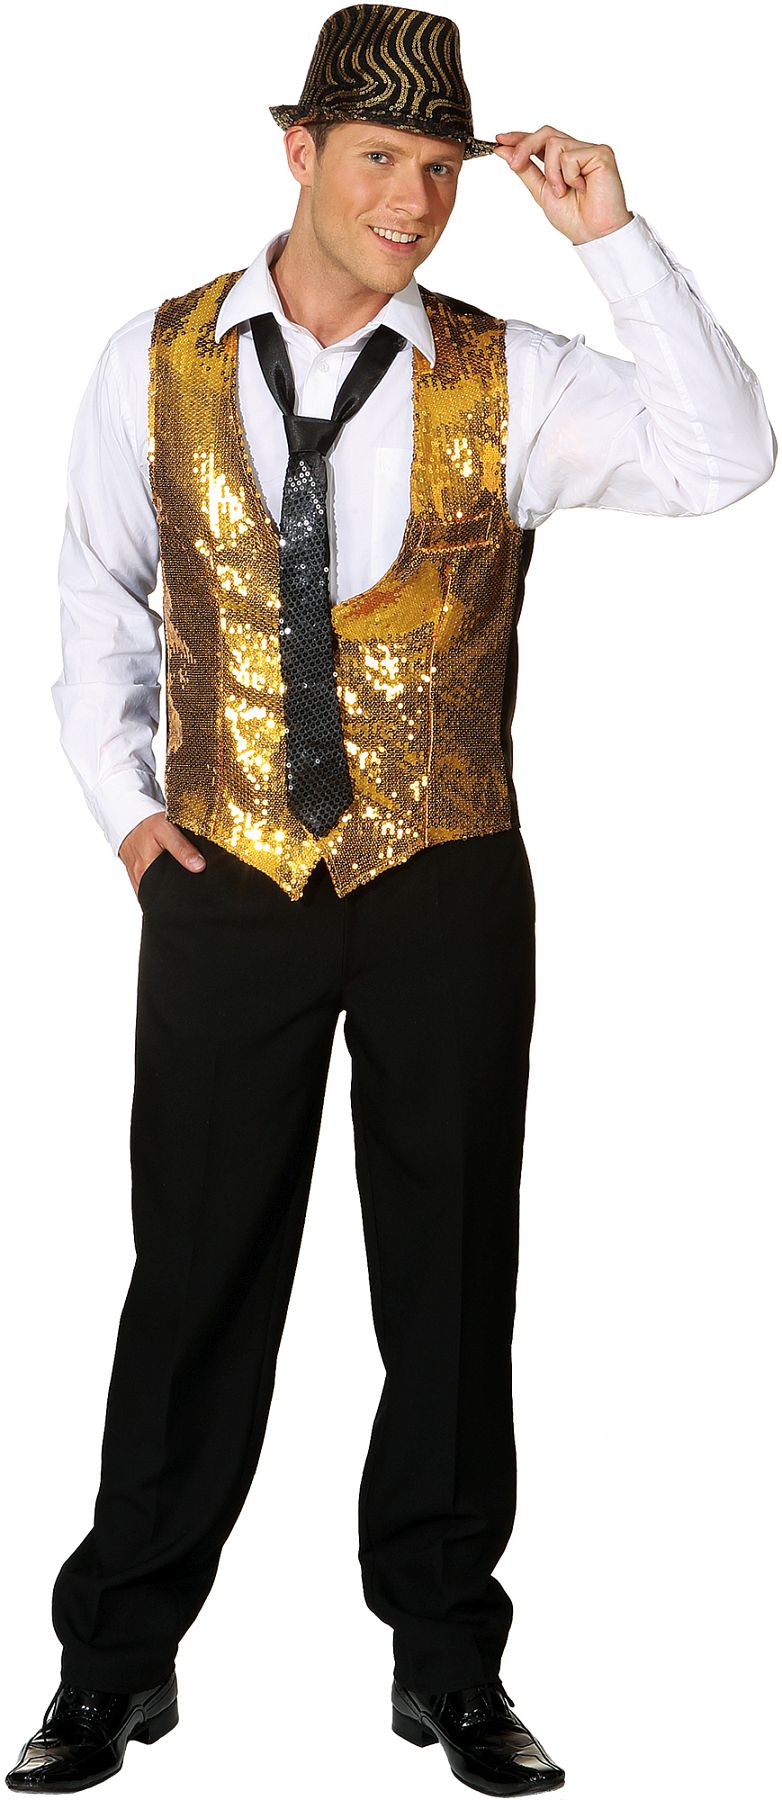 Sequin waistcoat, gold